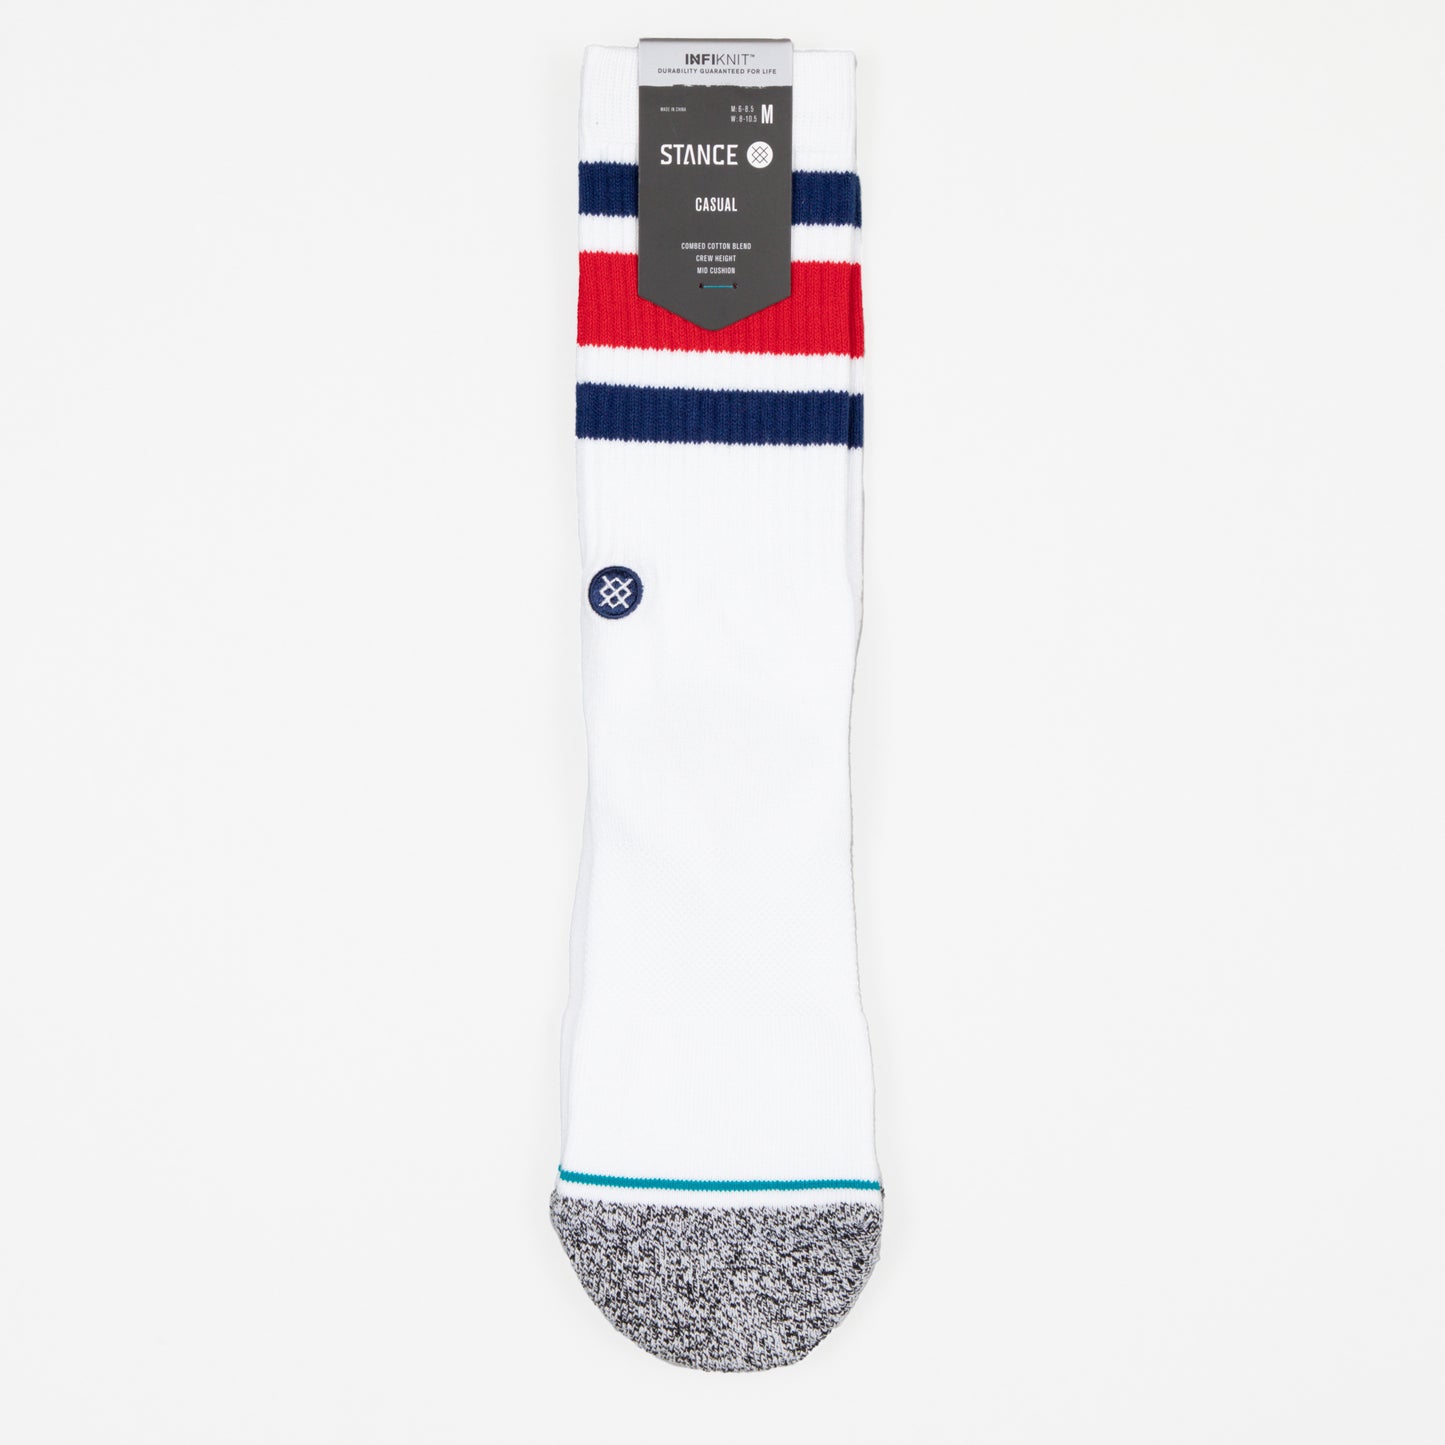 STANCE Boyd Staple Socks in WHITE , RED & BLUE